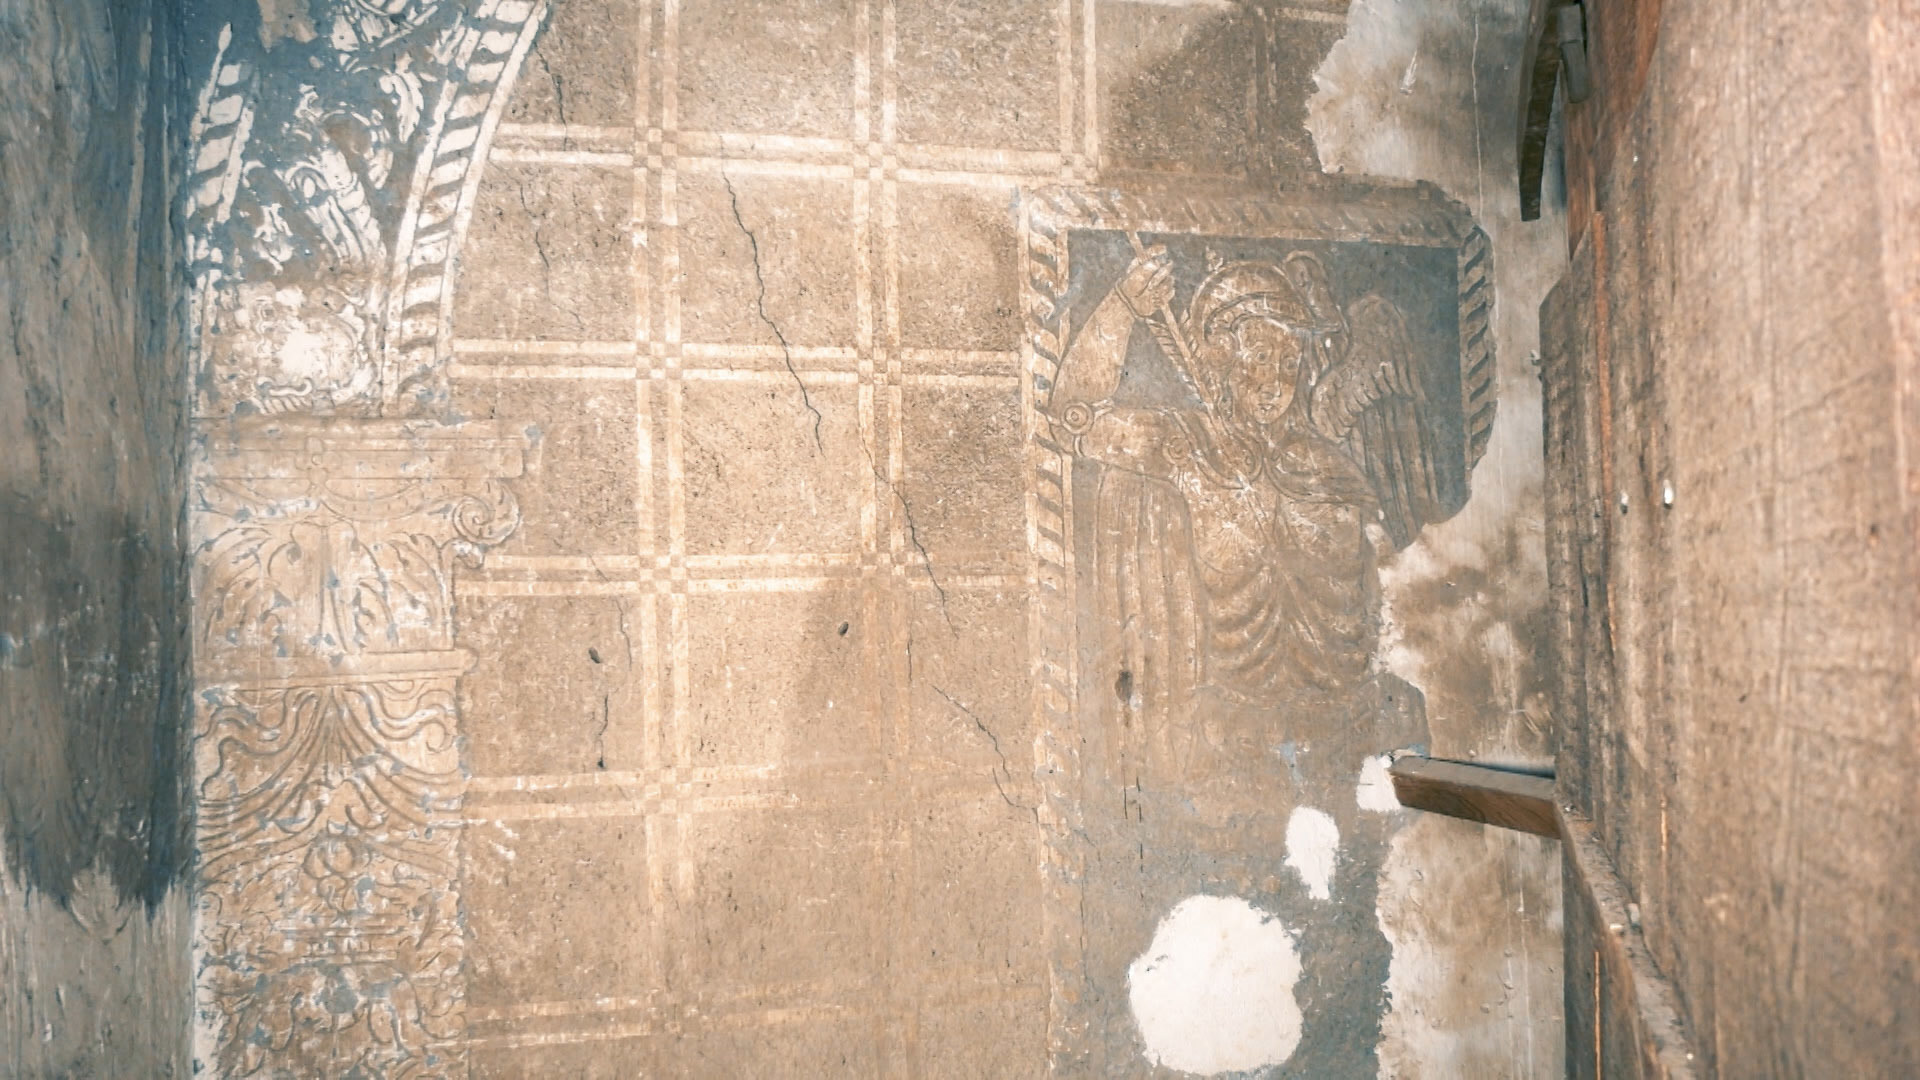 El secreto que durante siglos se ha guardado oculto tras el retablo de la iglesia de Peraleda de la Mata